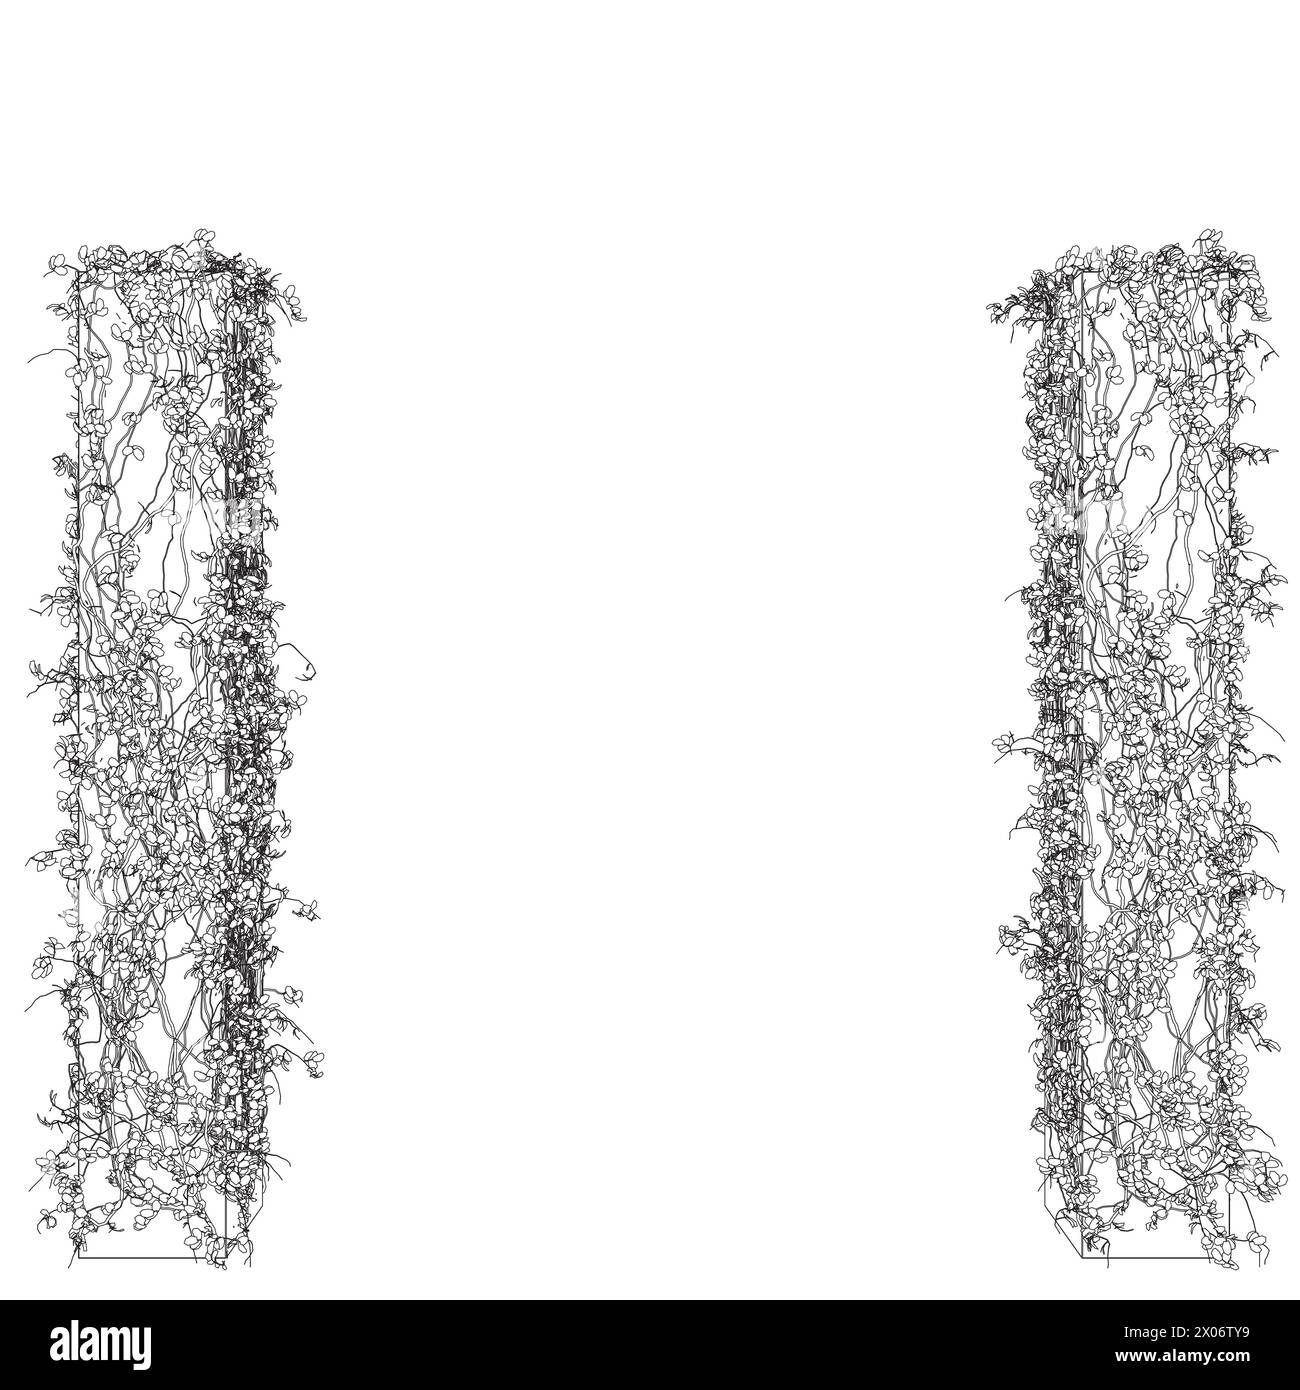 Kontur von Säulen, die mit Pflanzen verschlungen sind, mit Blättern aus schwarzen Linien, die auf weißem Hintergrund isoliert sind. 3D. Vektorabbildung. Stock Vektor